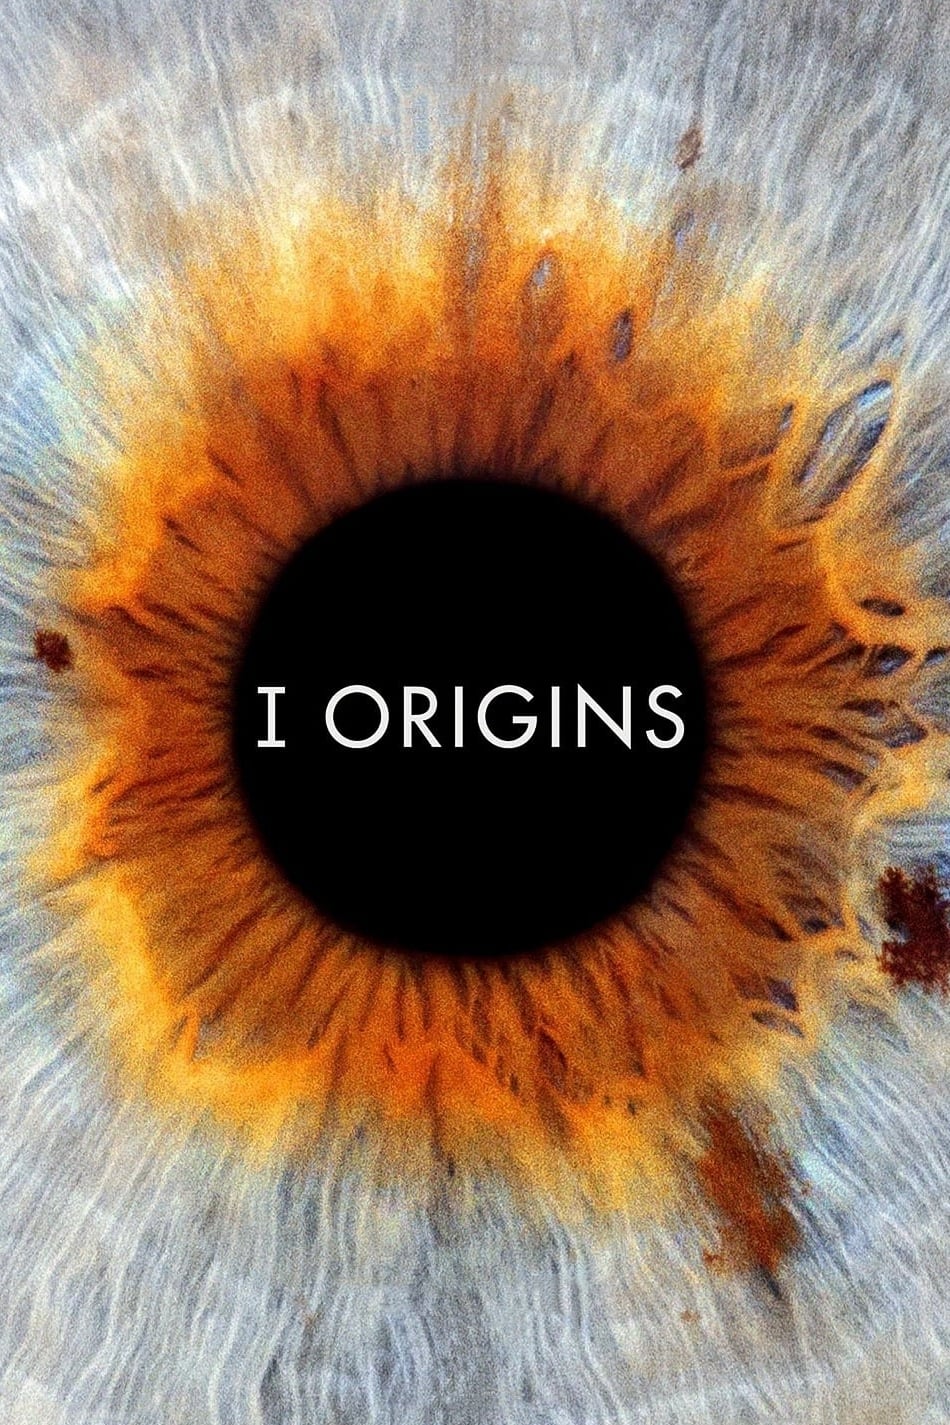 I Origins est-il disponible sur Netflix ou autre ?